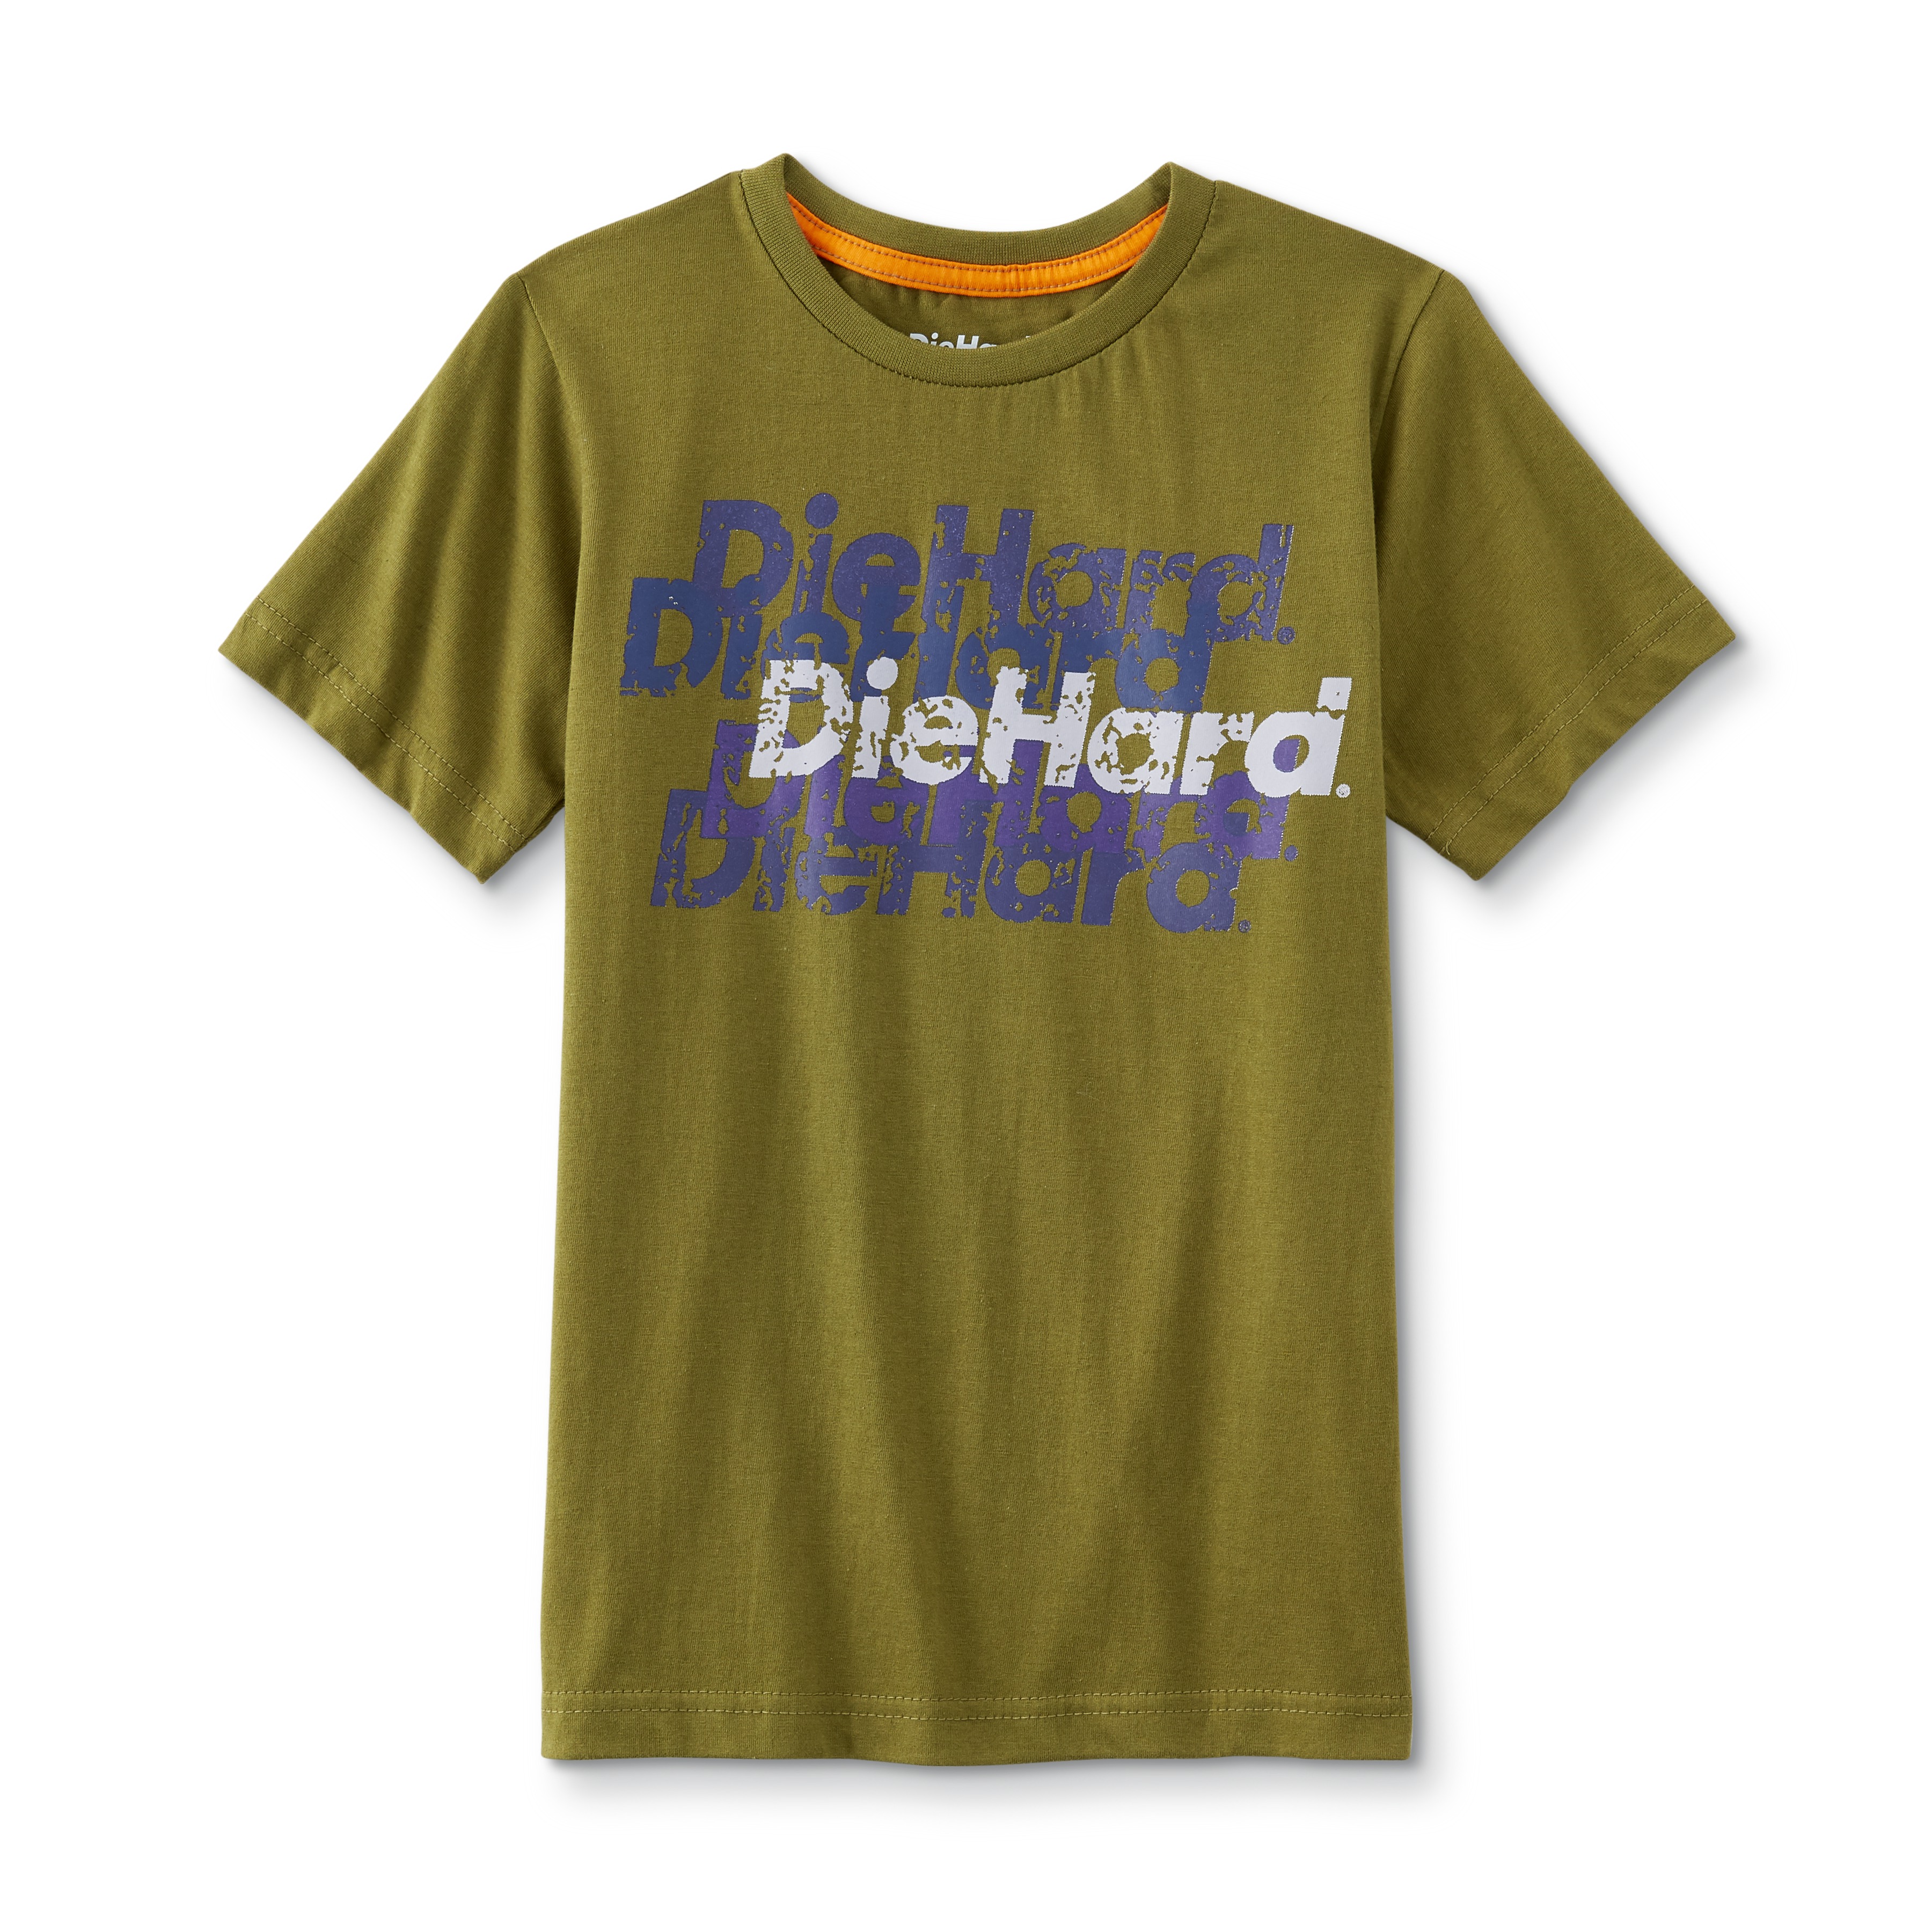 DieHard Boy's Graphic T'shirt